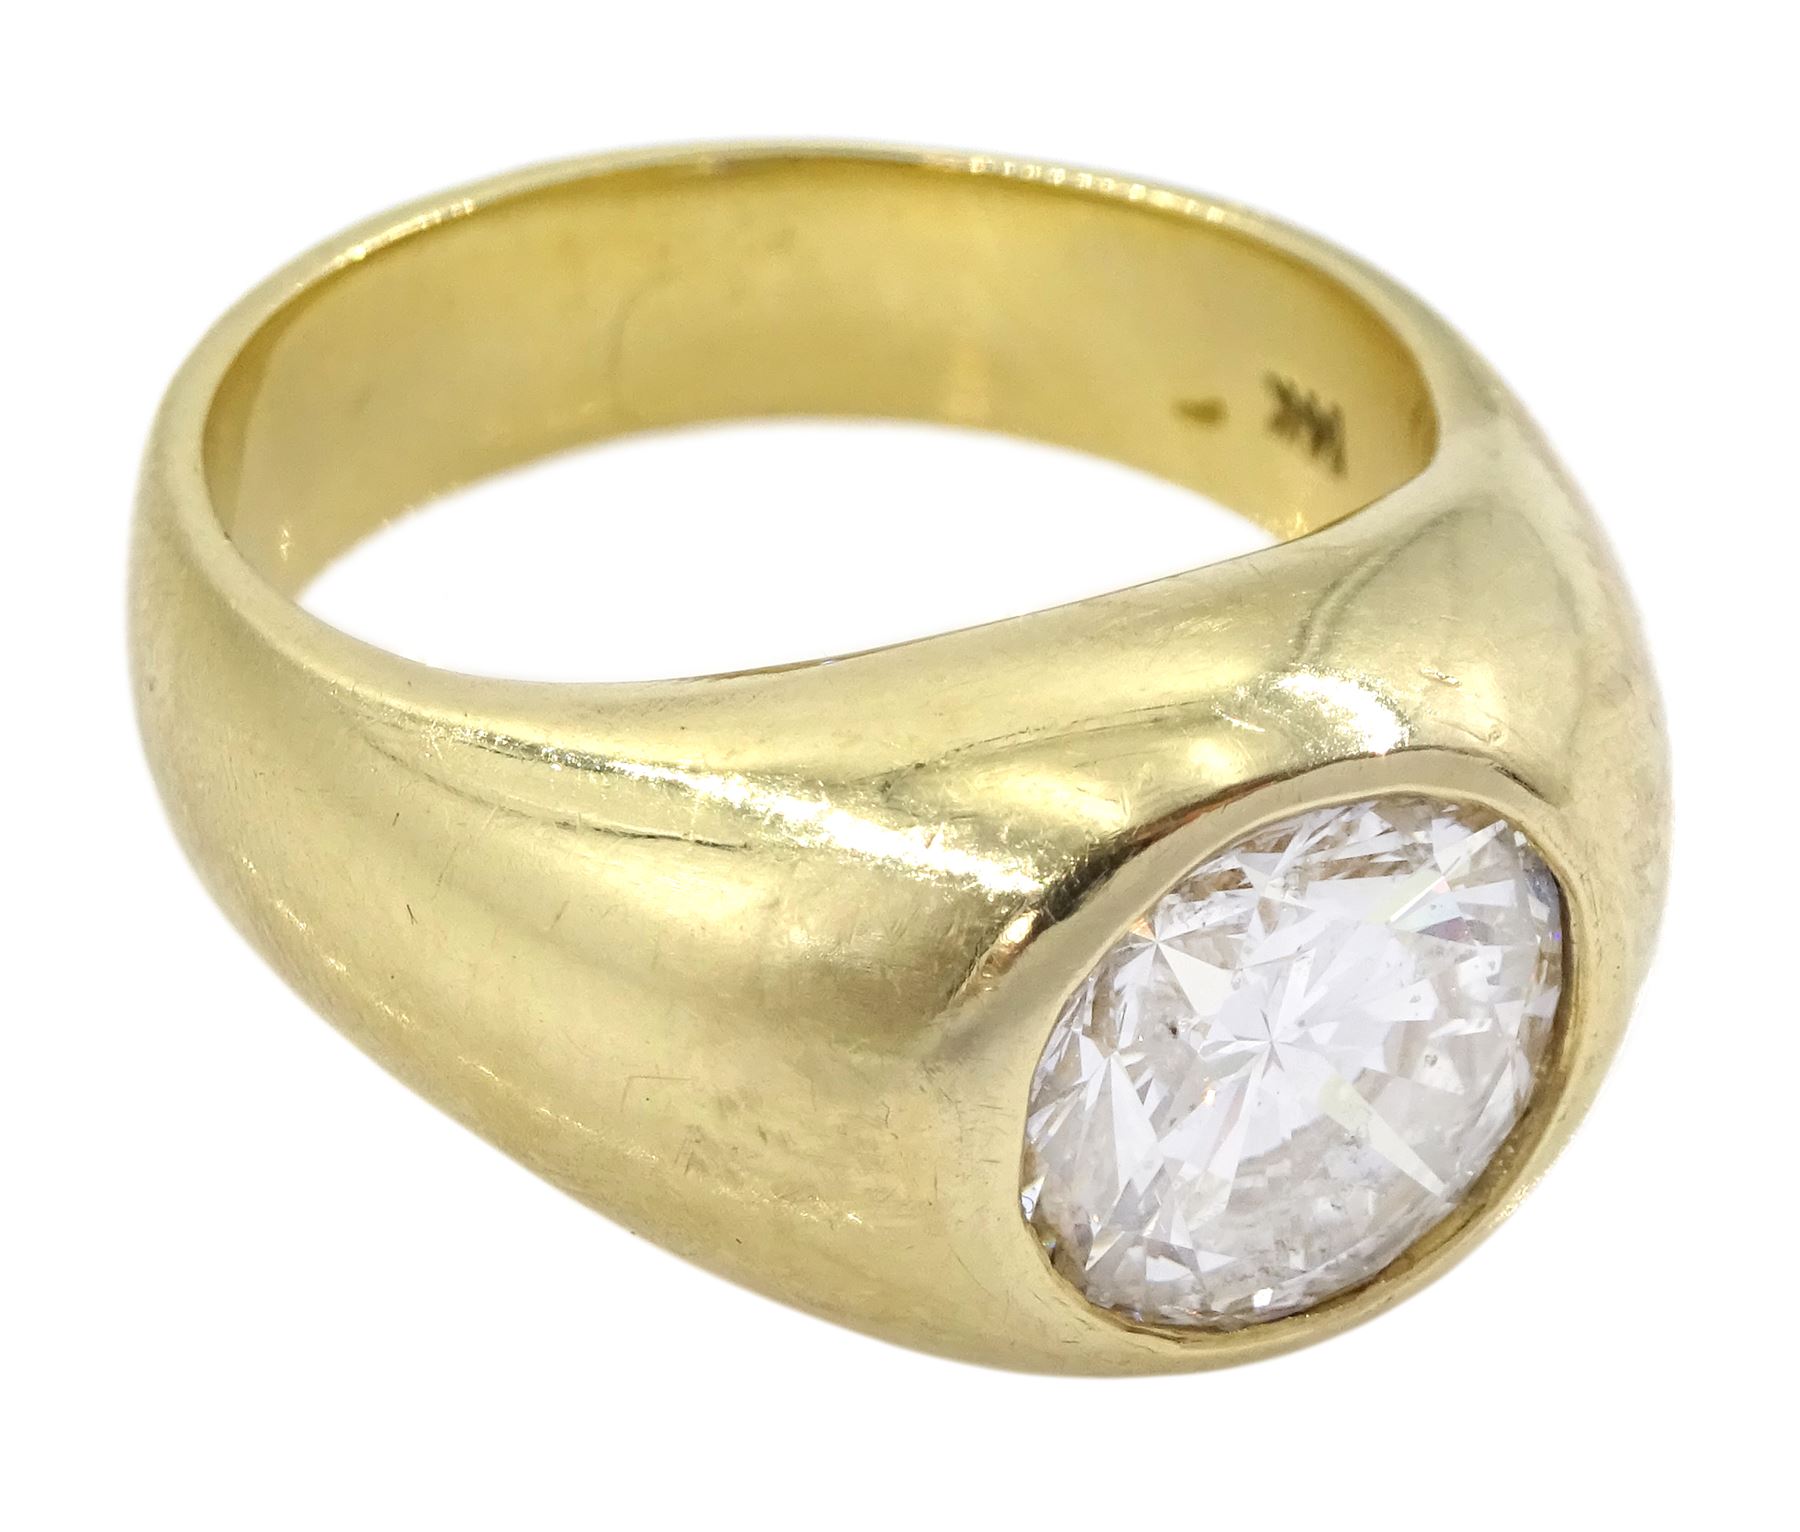 Gold single stone bezel set round brilliant cut diamond ring - Image 3 of 6